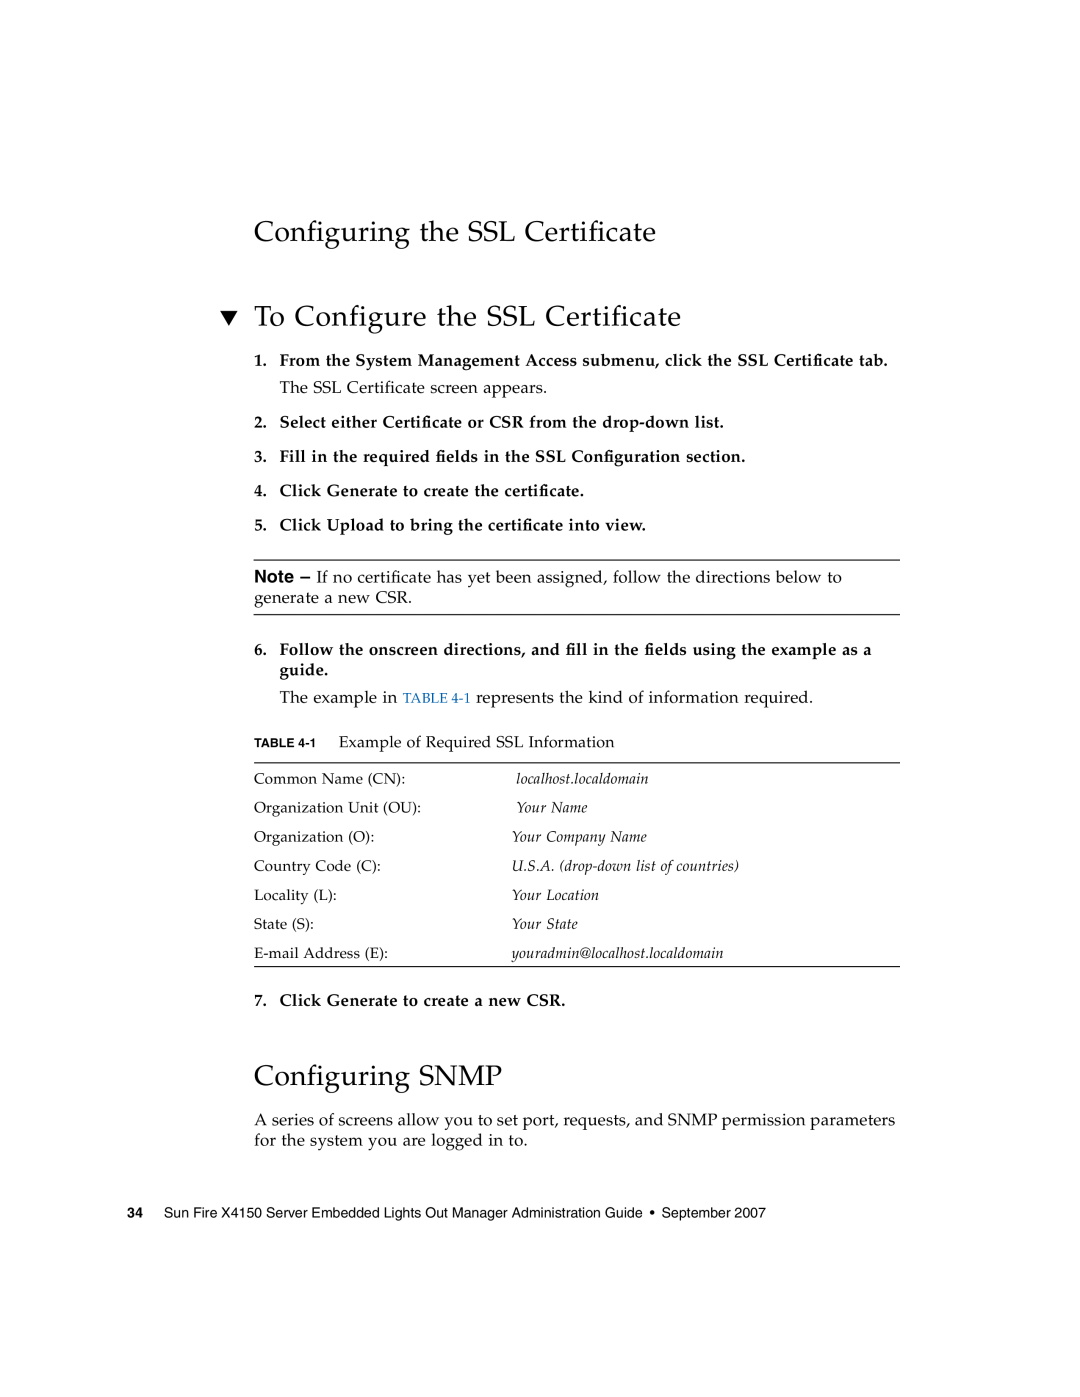 Sun Microsystems X4150 manual Configuring the SSL Certificate To Configure the SSL Certificate, Configuring SNMP 